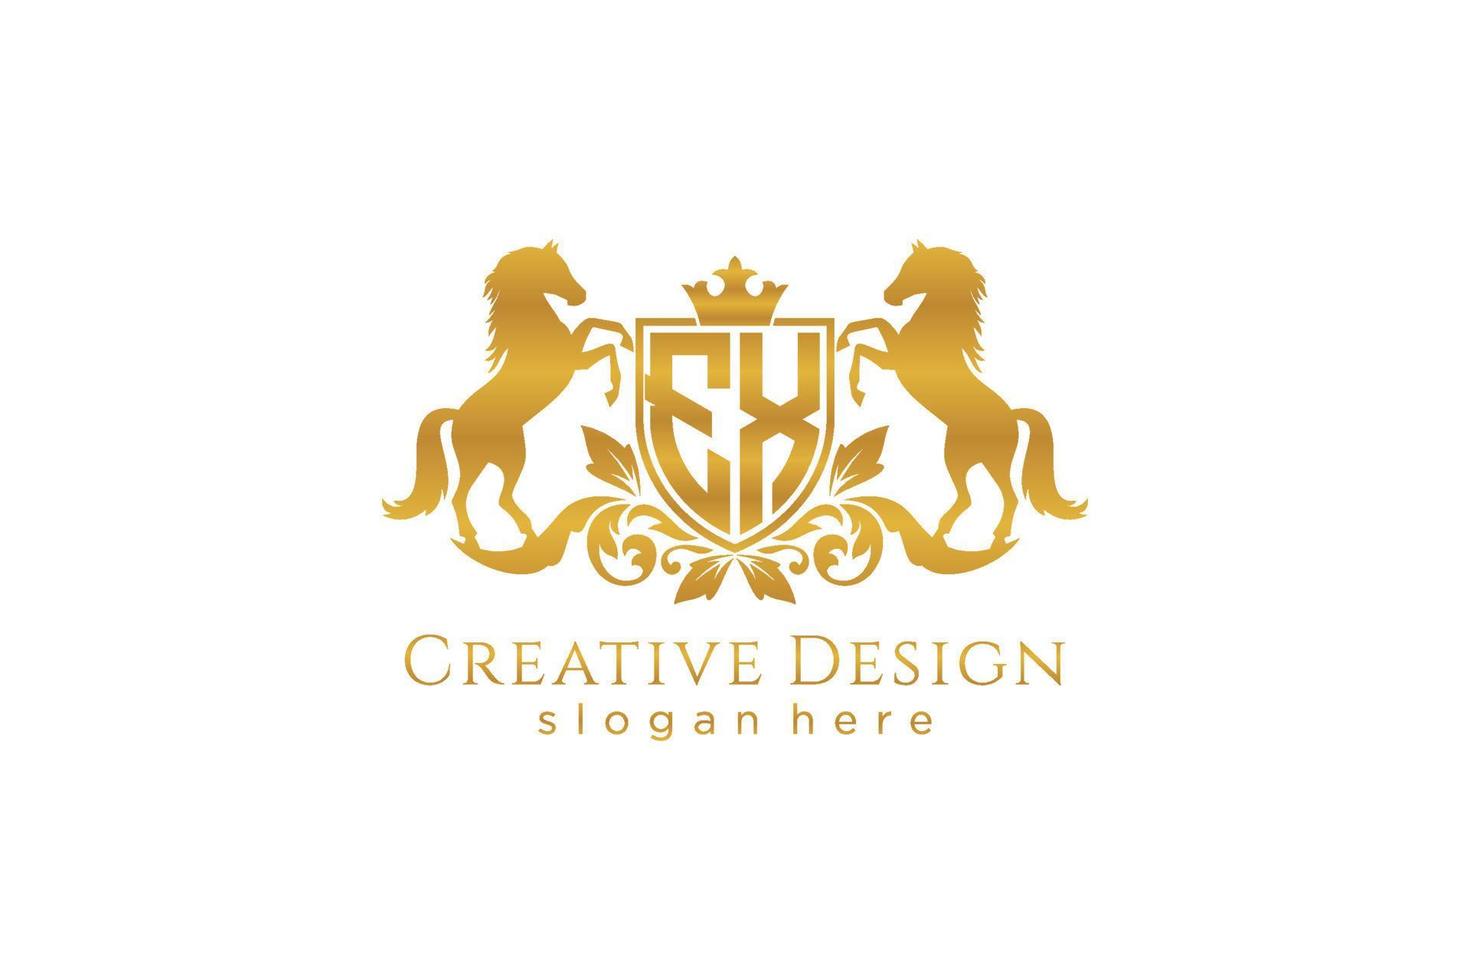 cresta de oro retro inicial con escudo y dos caballos, plantilla de insignia con pergaminos y corona real - perfecto para proyectos de marca de lujo vector